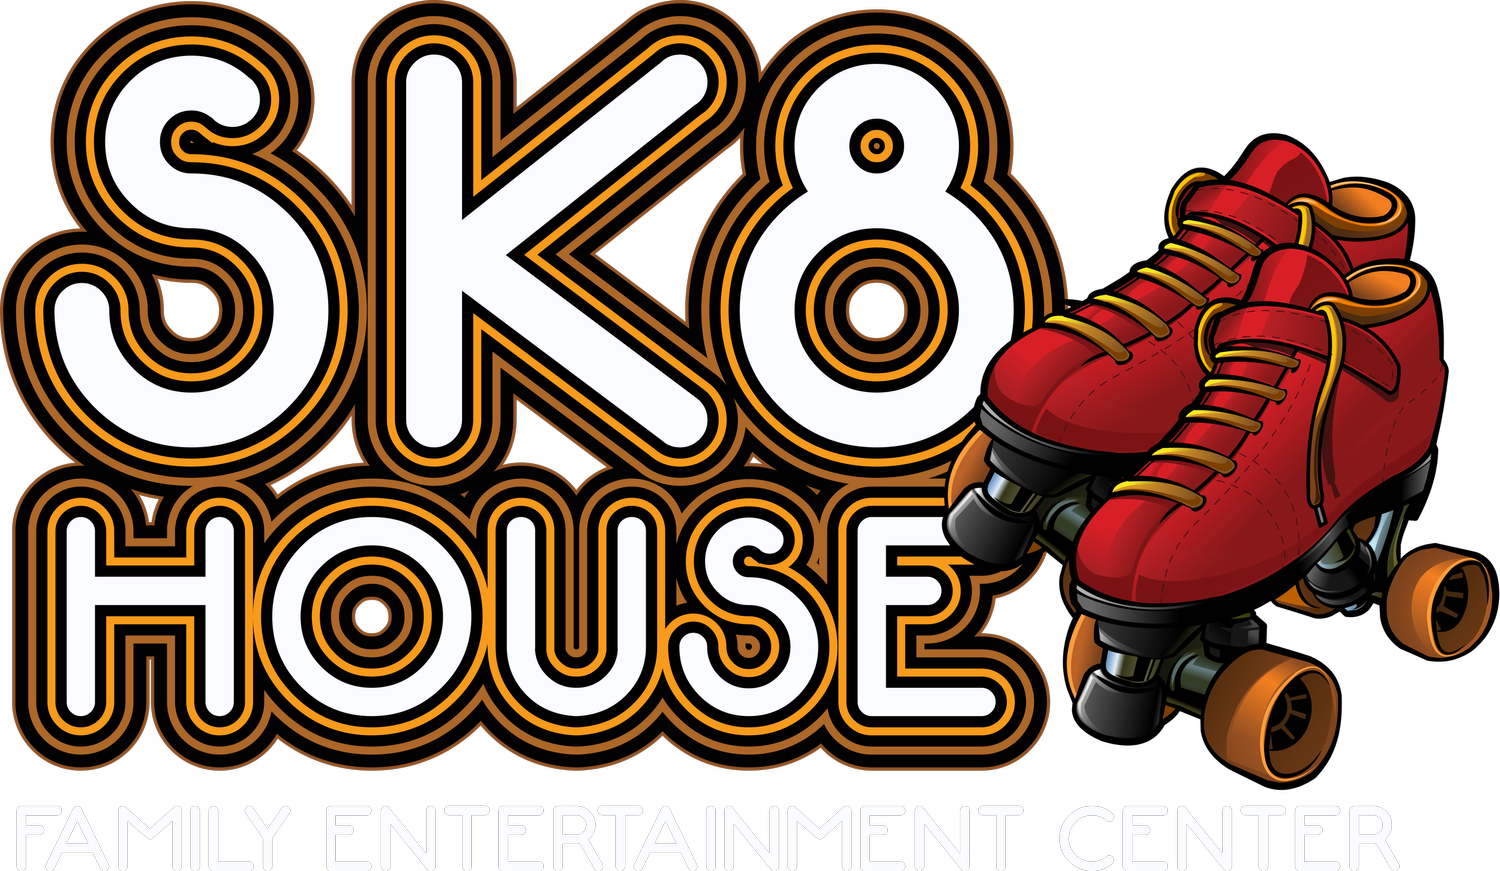 SK8 House Family Entertainment Center